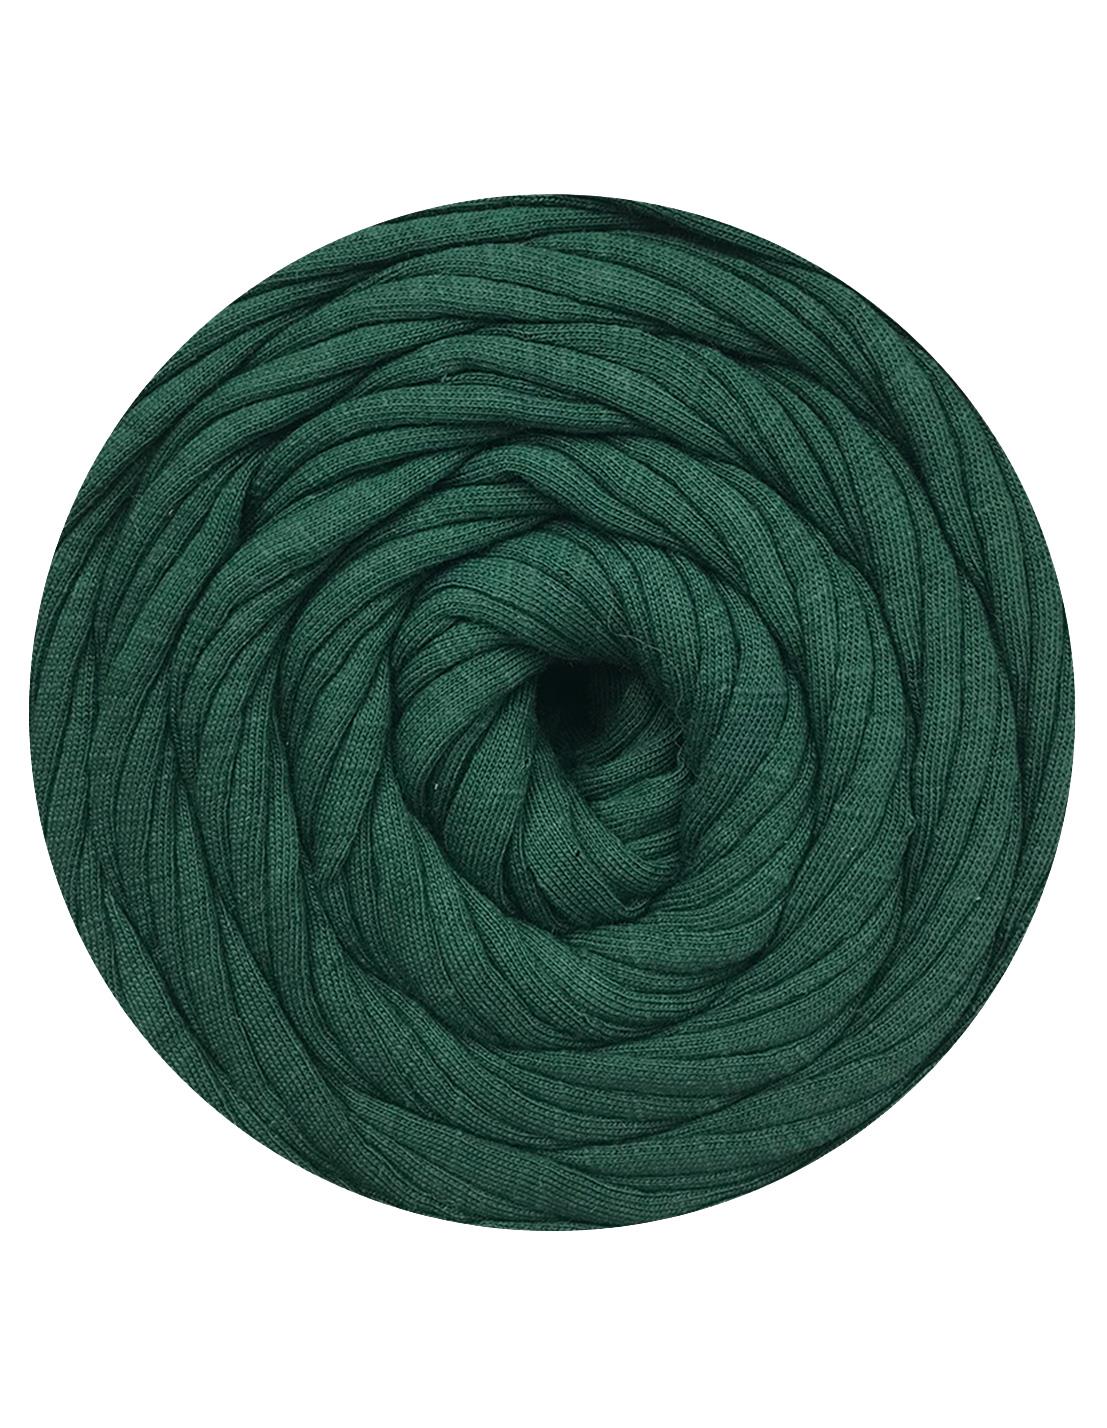 Hunter green t-shirt yarn (100-120m)